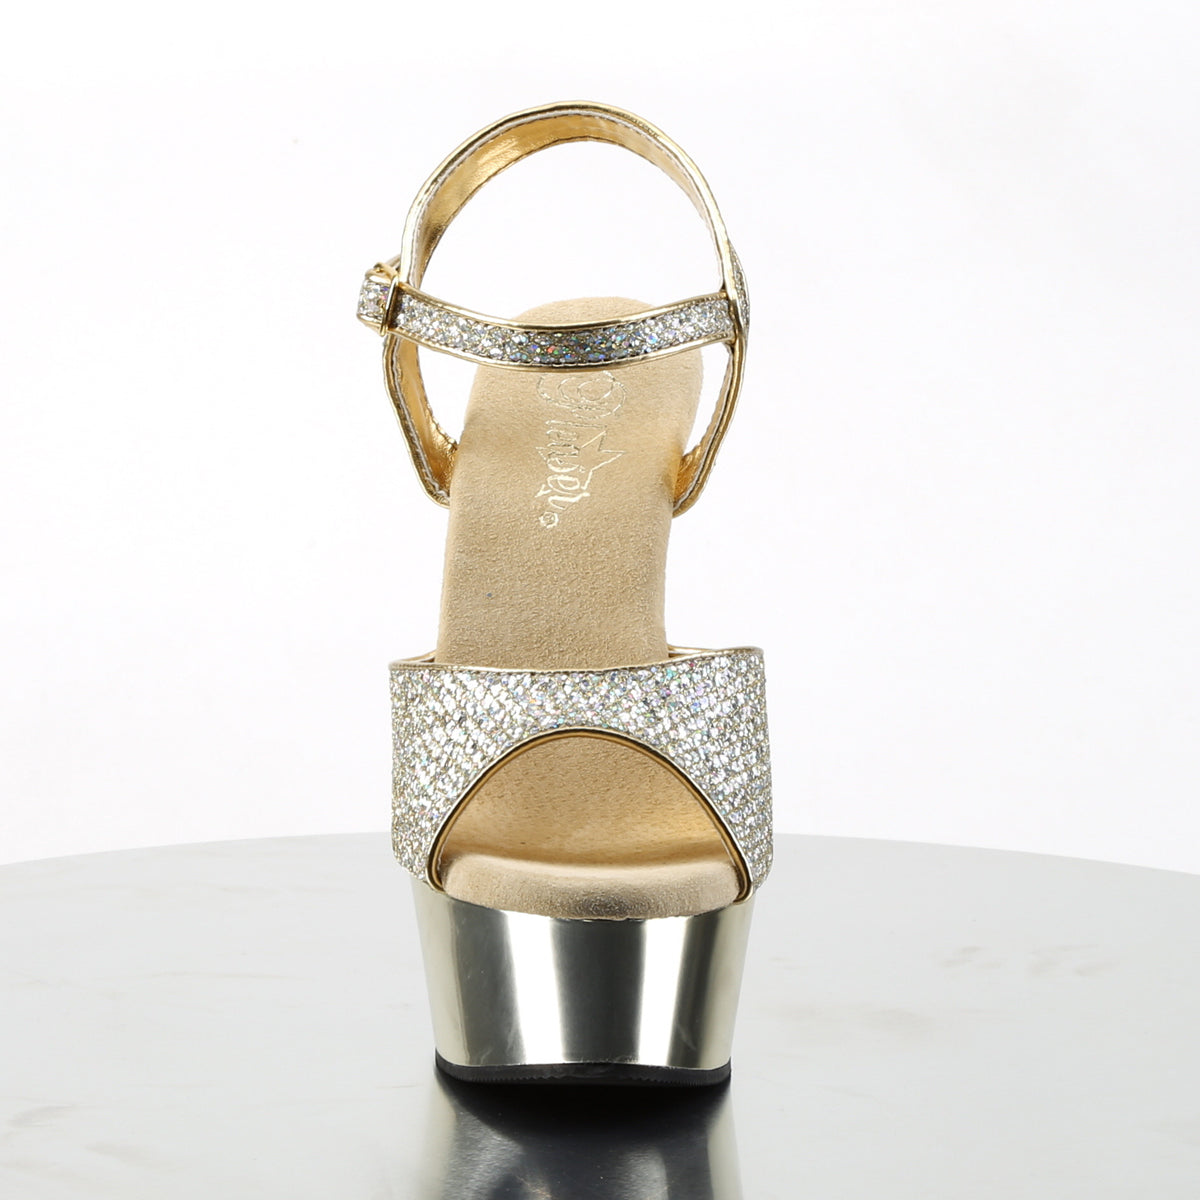 Pleaser Sandales pour femmes DELIGHT-609g Gold multi gltr / chrome d'or